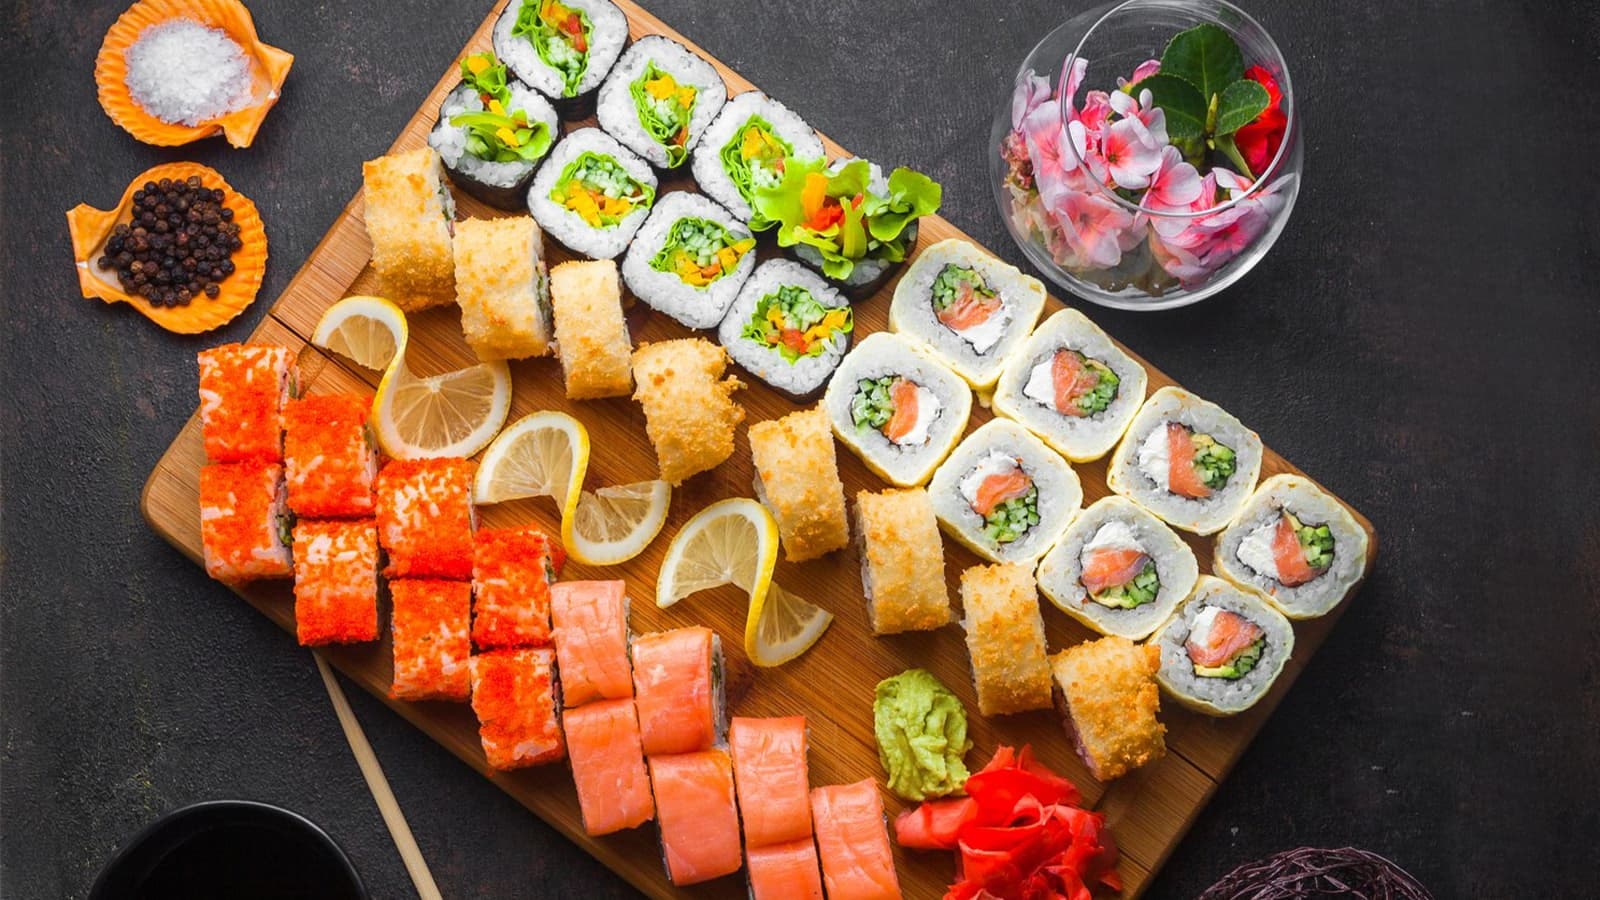 Wie gesund ist Sushi wirklich? Bild von Sushi und anderen Zutaten auf einem Holzbrett.